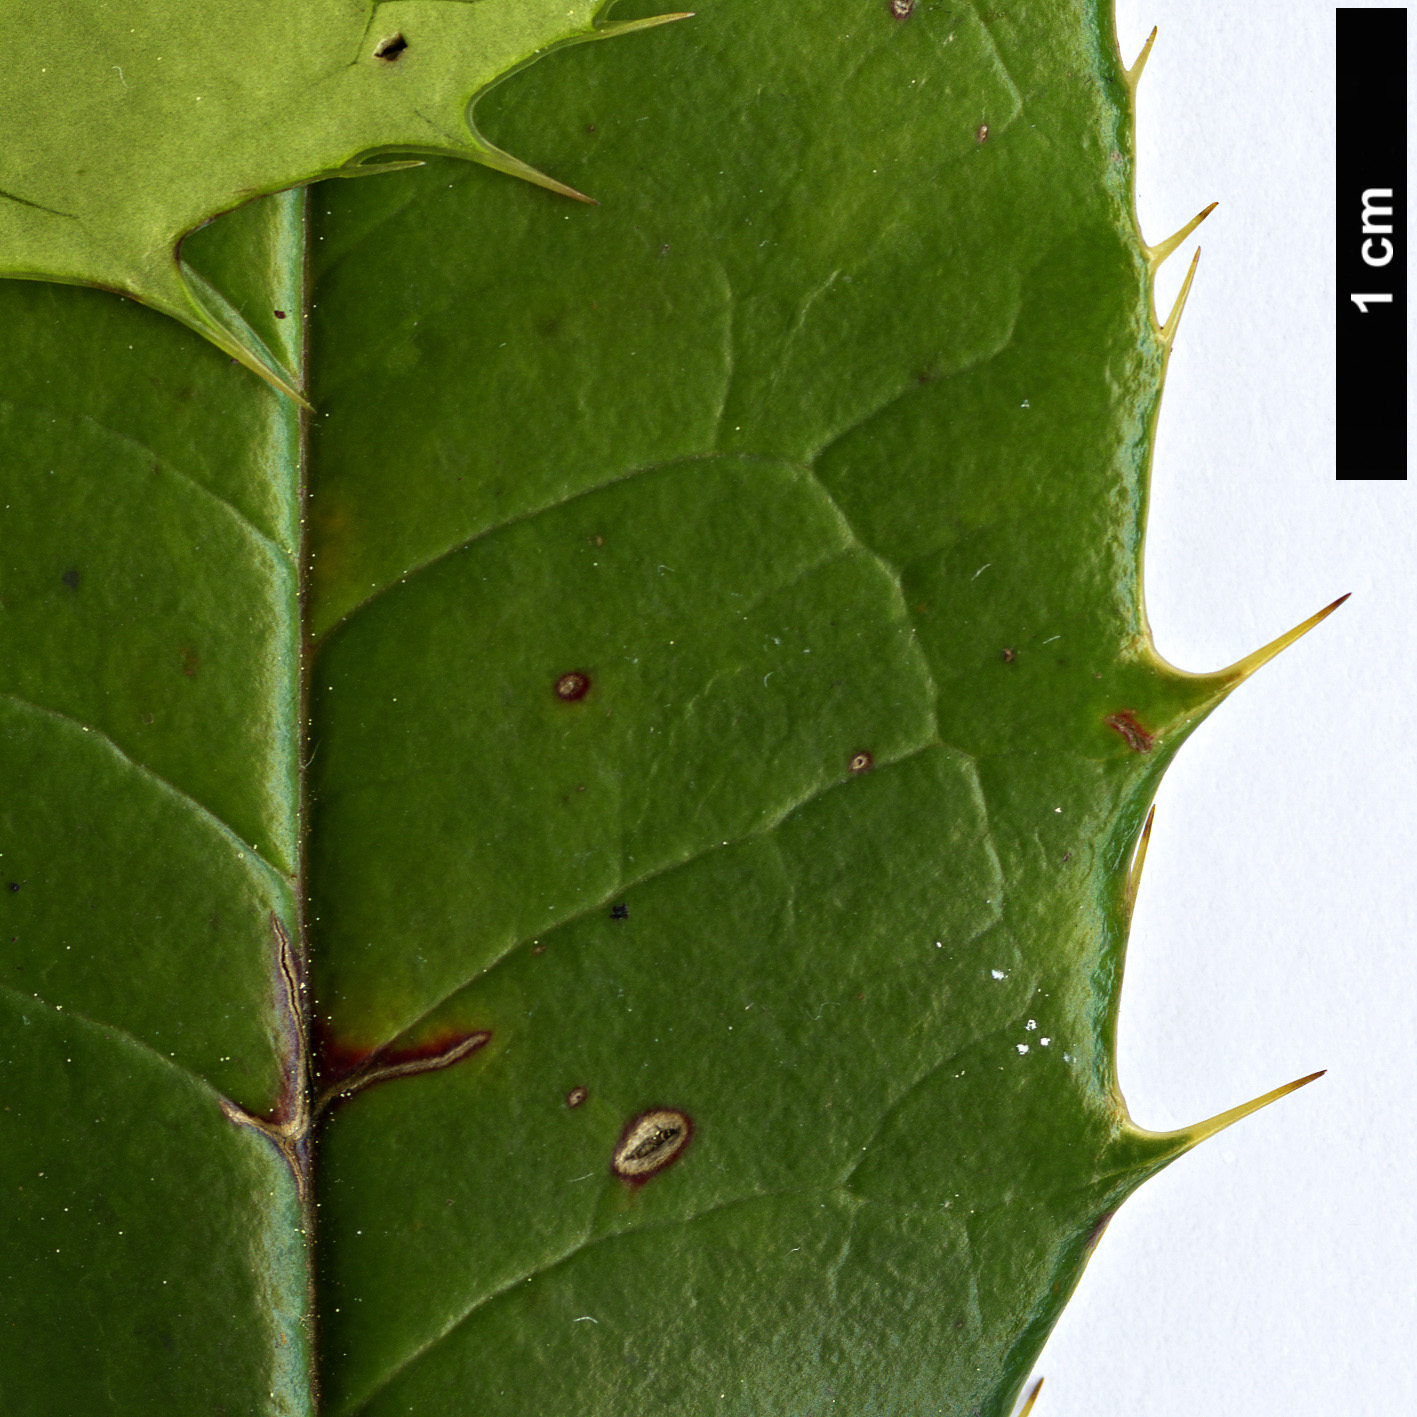 High resolution image: Family: Berberidaceae - Genus: Berberis - Taxon: insignis